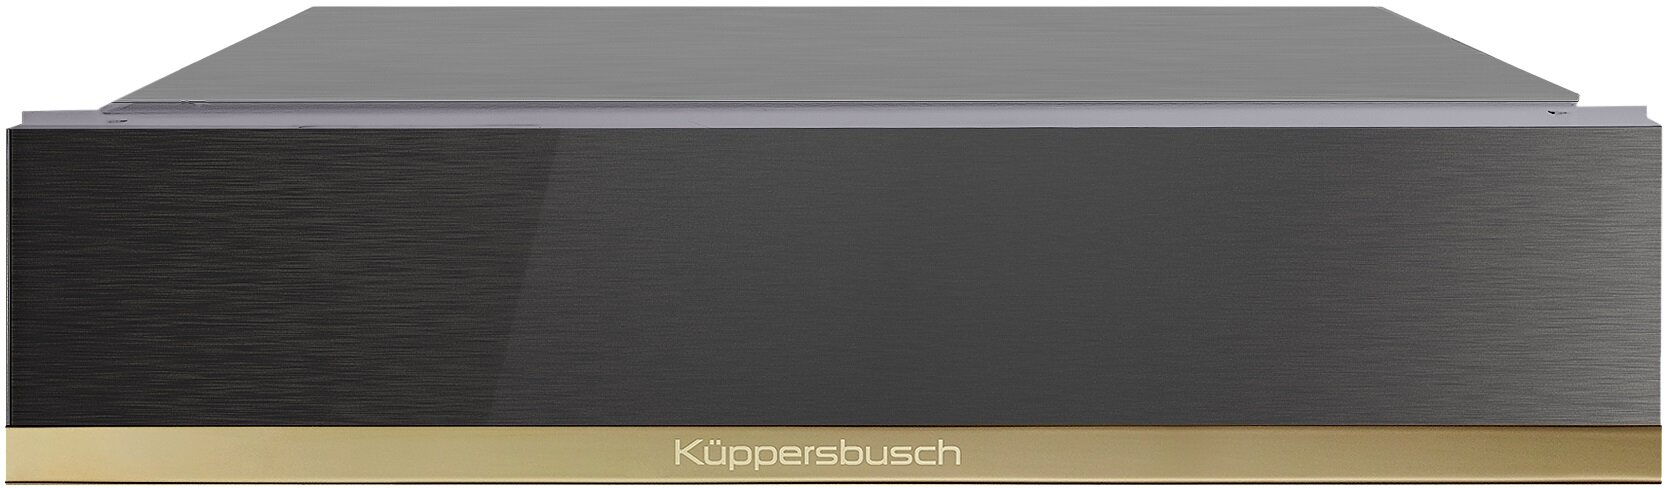 Подогреватель посуды Kuppersbusch CSW 6800.0 GPH 4 Gold